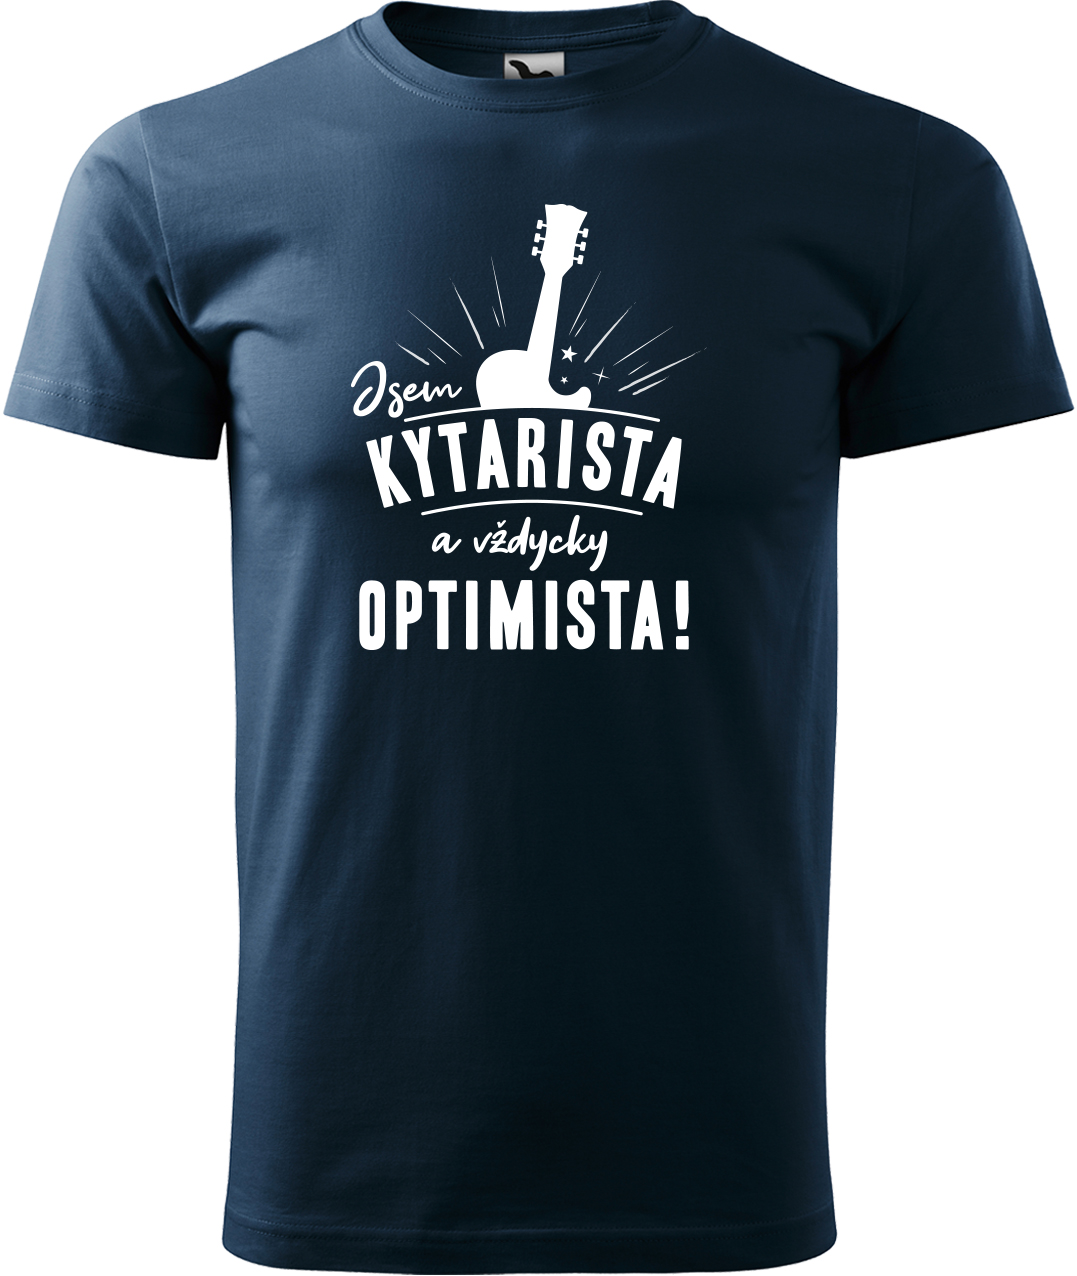 Pánské tričko s kytarou - Kytarista optimista Velikost: 4XL, Barva: Námořní modrá (02), Střih: pánský